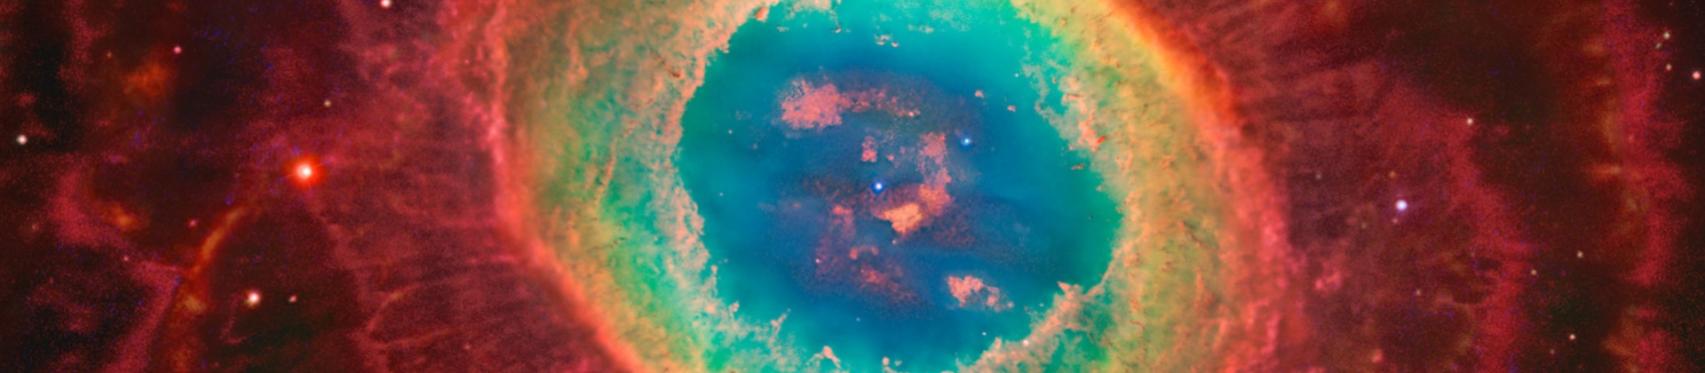 Nebulosa planetaria M57